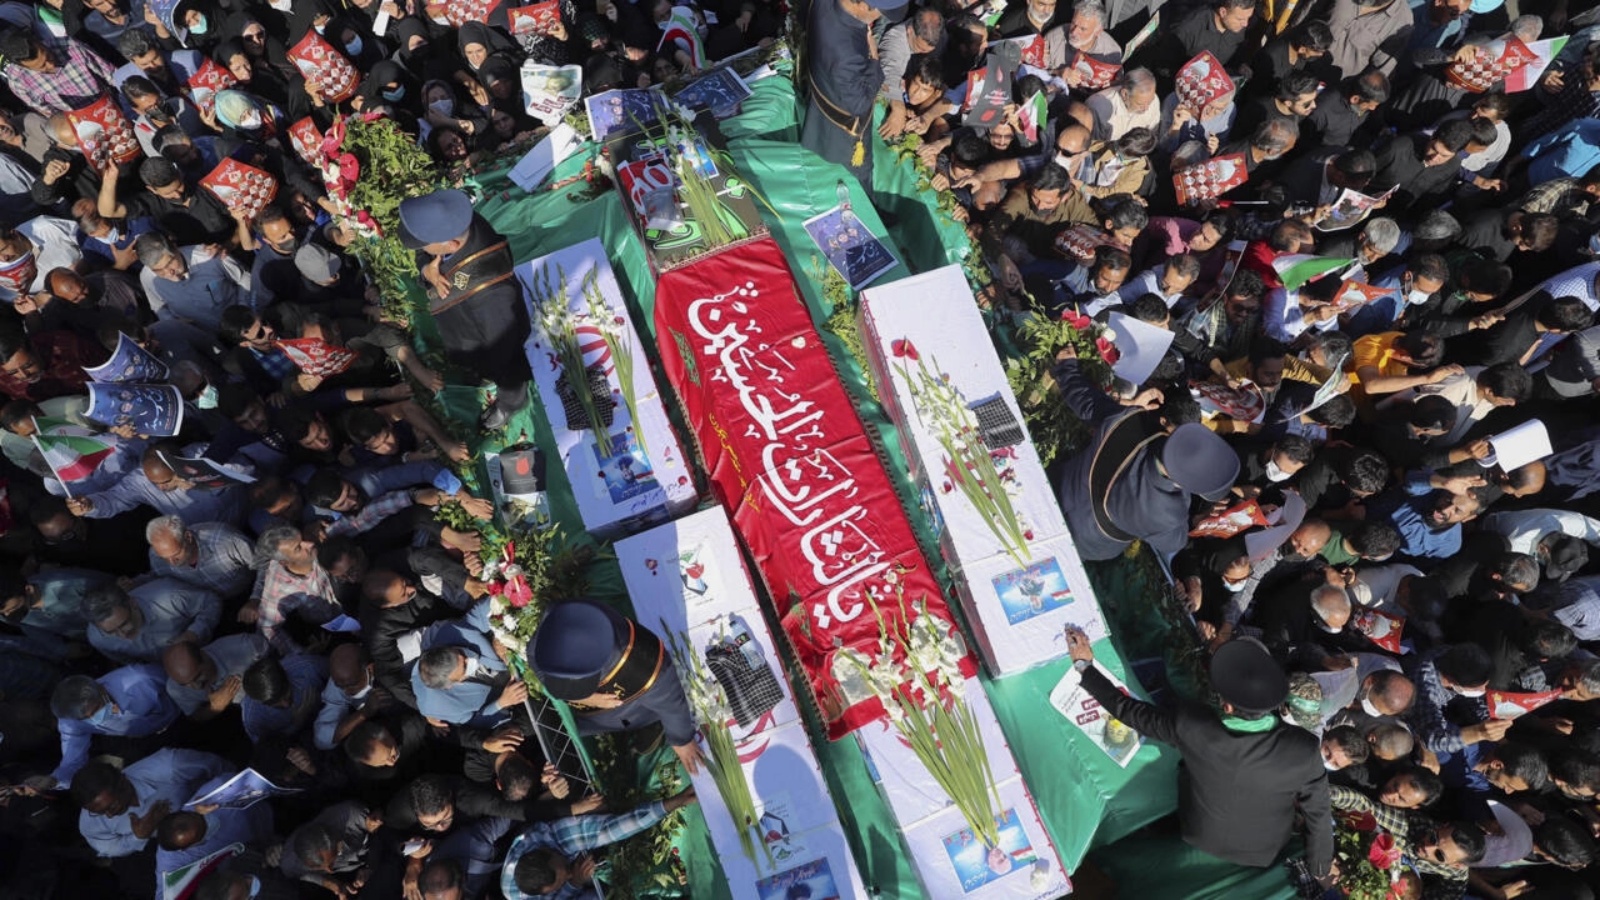 مشيعون يشاركون في جنازة ضحايا هجوم على مرقد ديني في مدينة شيراز في جنوب إيران في 29 أكتوبر 2022 